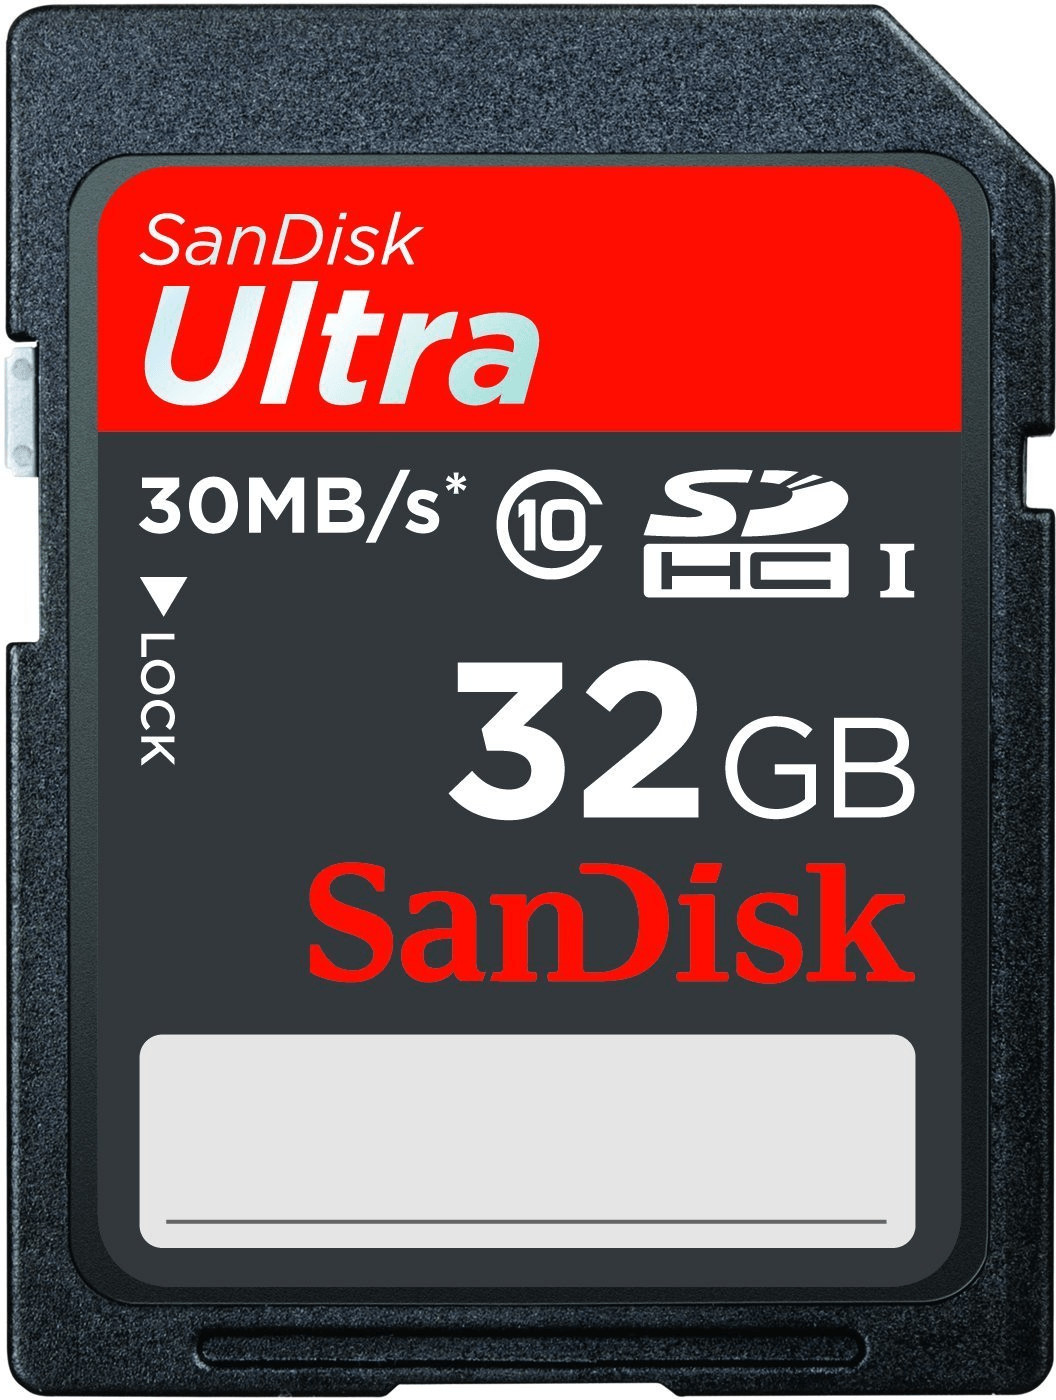 SanDisk Ultra SDHC 32GB Class 10 UHS-I (SDSDU-032G)